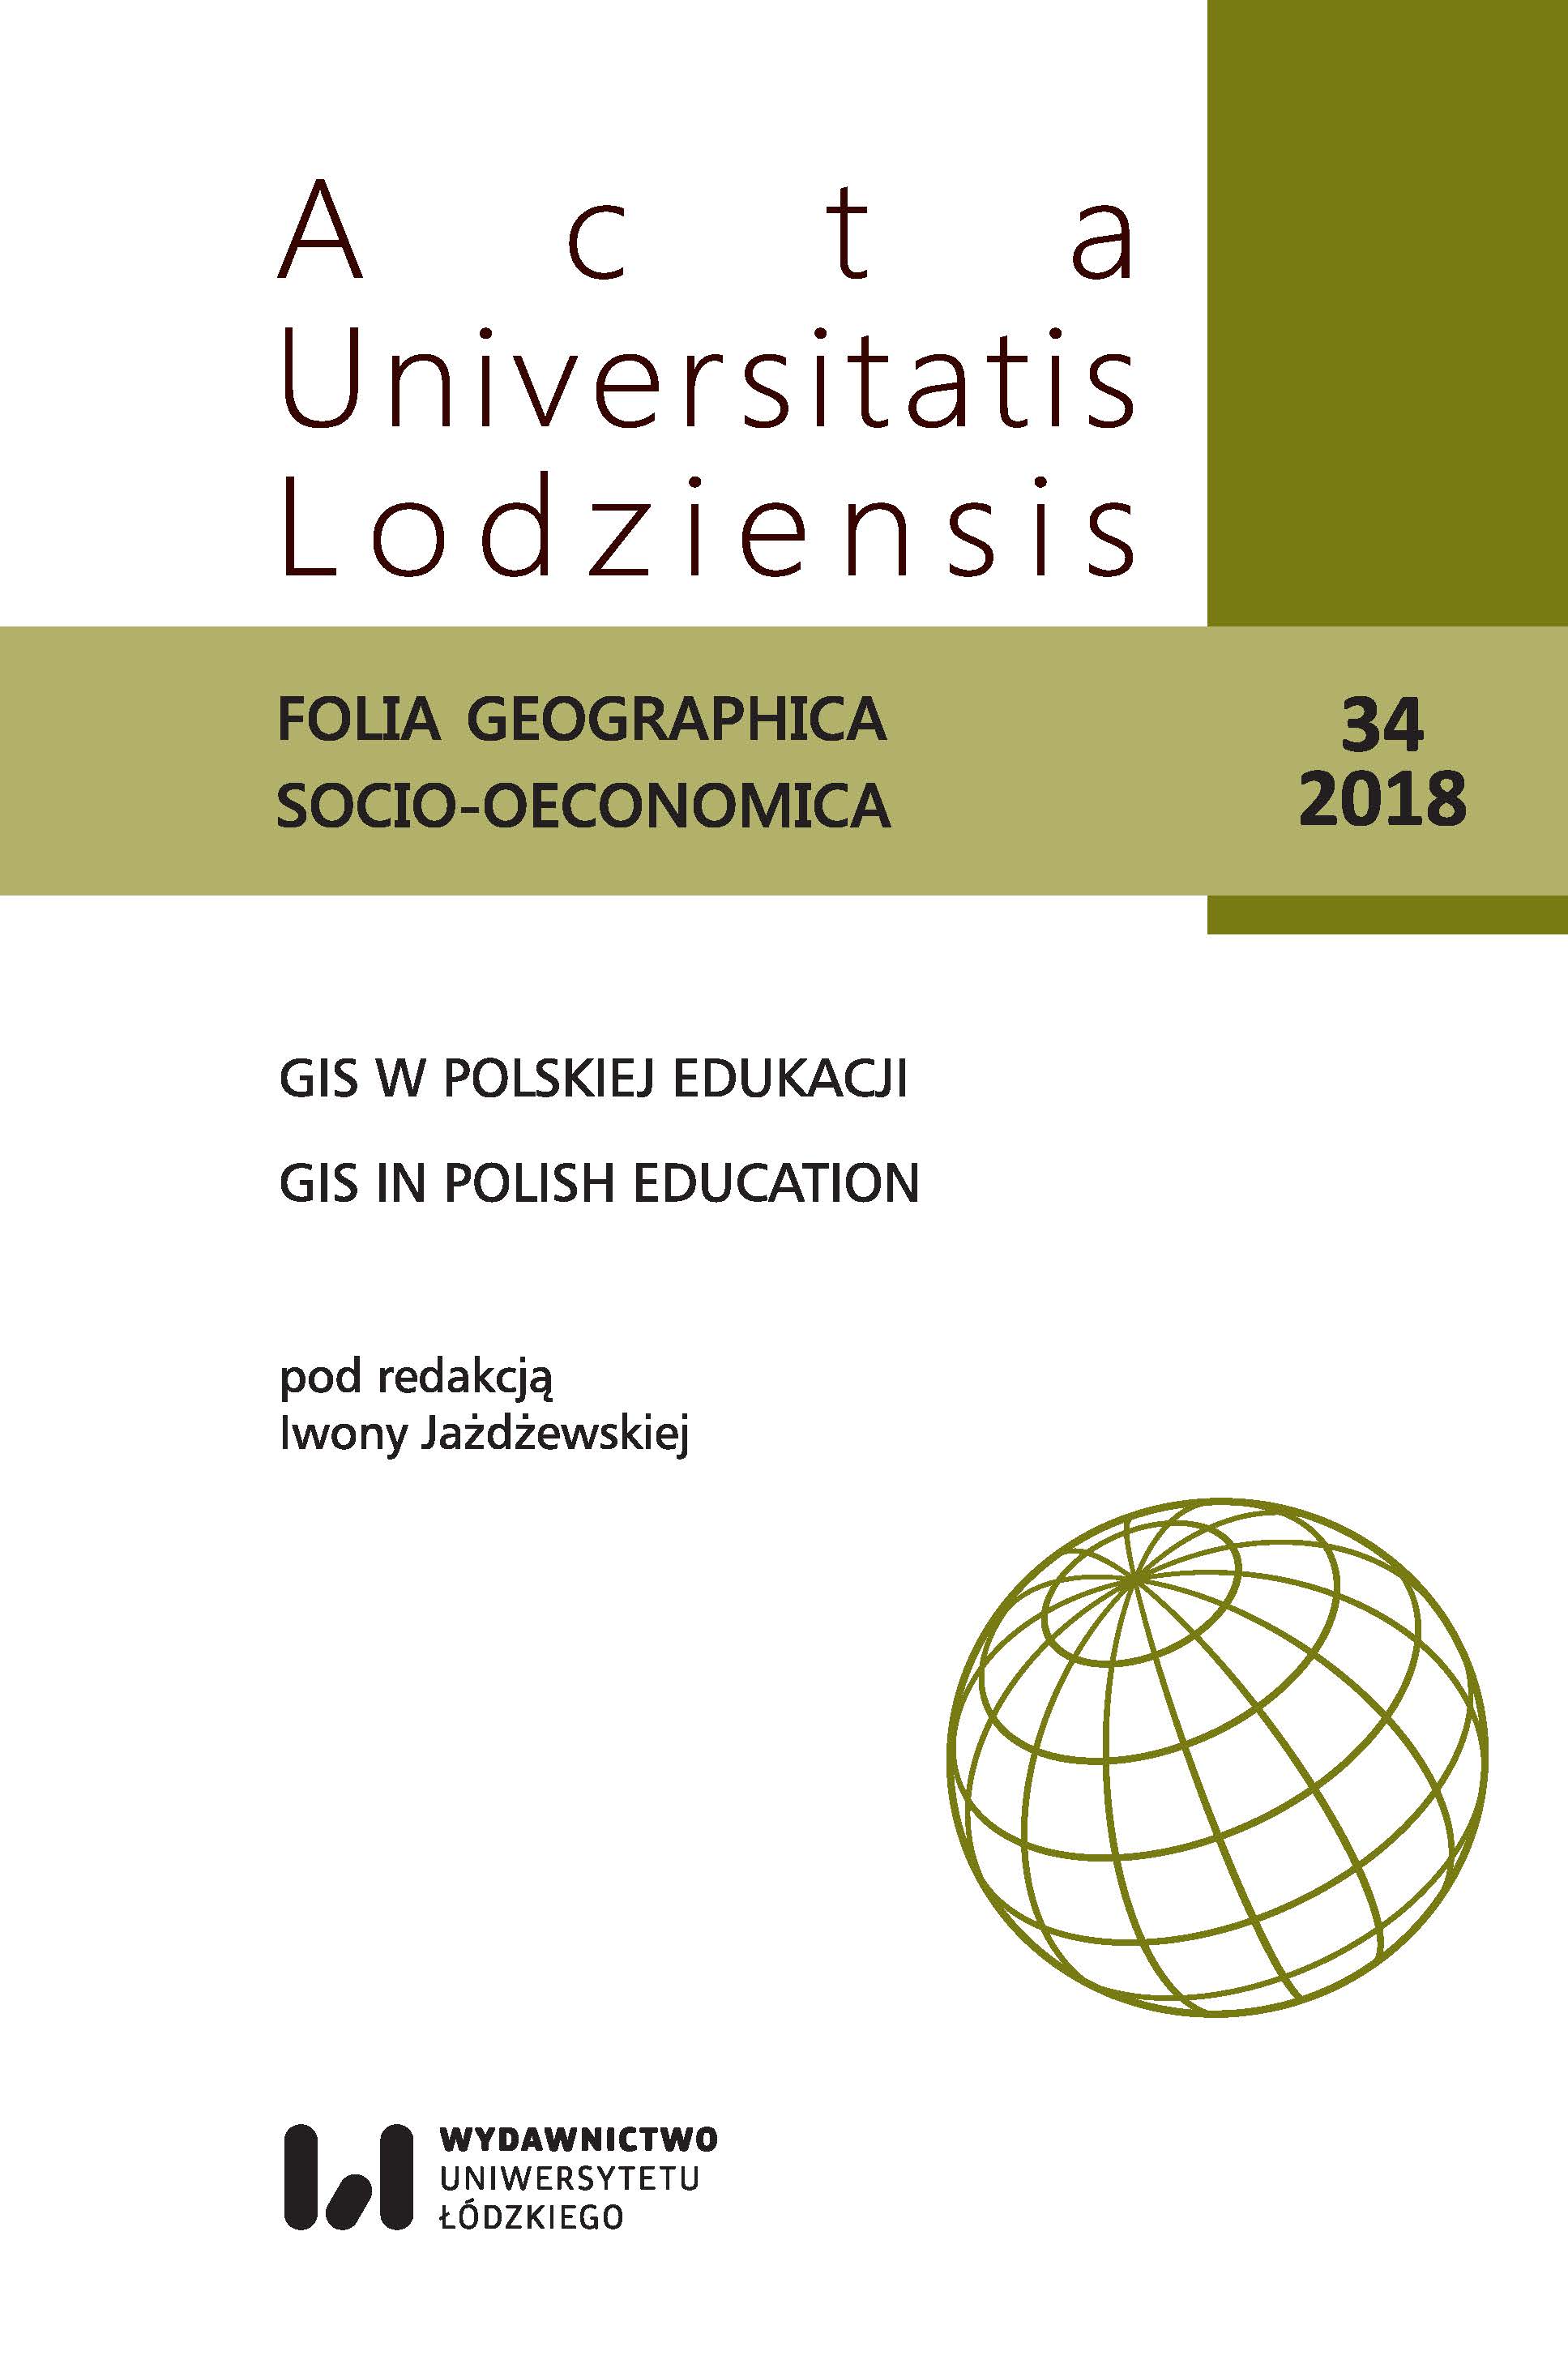 Zastosowanie Systemów Informacji Geograficznej (GIS) w dydaktyce geograficznej. Przykład ćwiczeń terenowych „Geografia turyzmu i hotelarstwa”